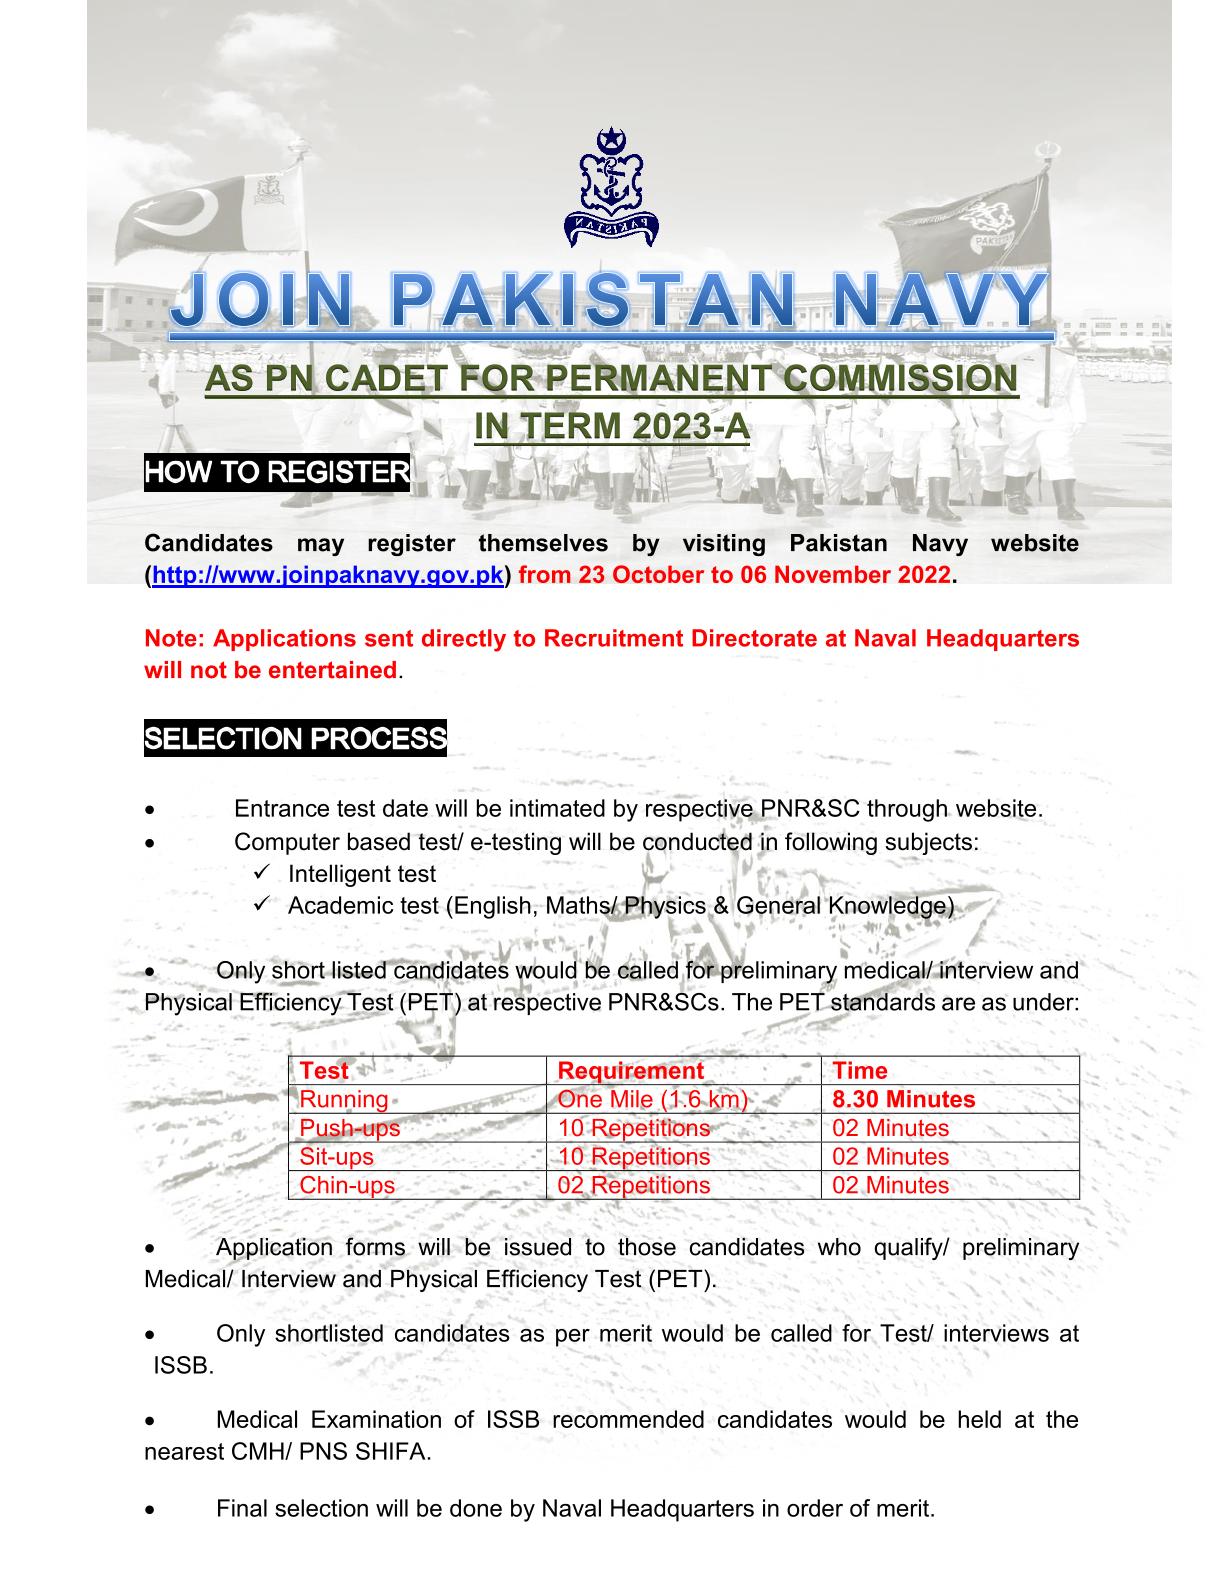 Jobs for PN Cadet in Pak Navy 2022